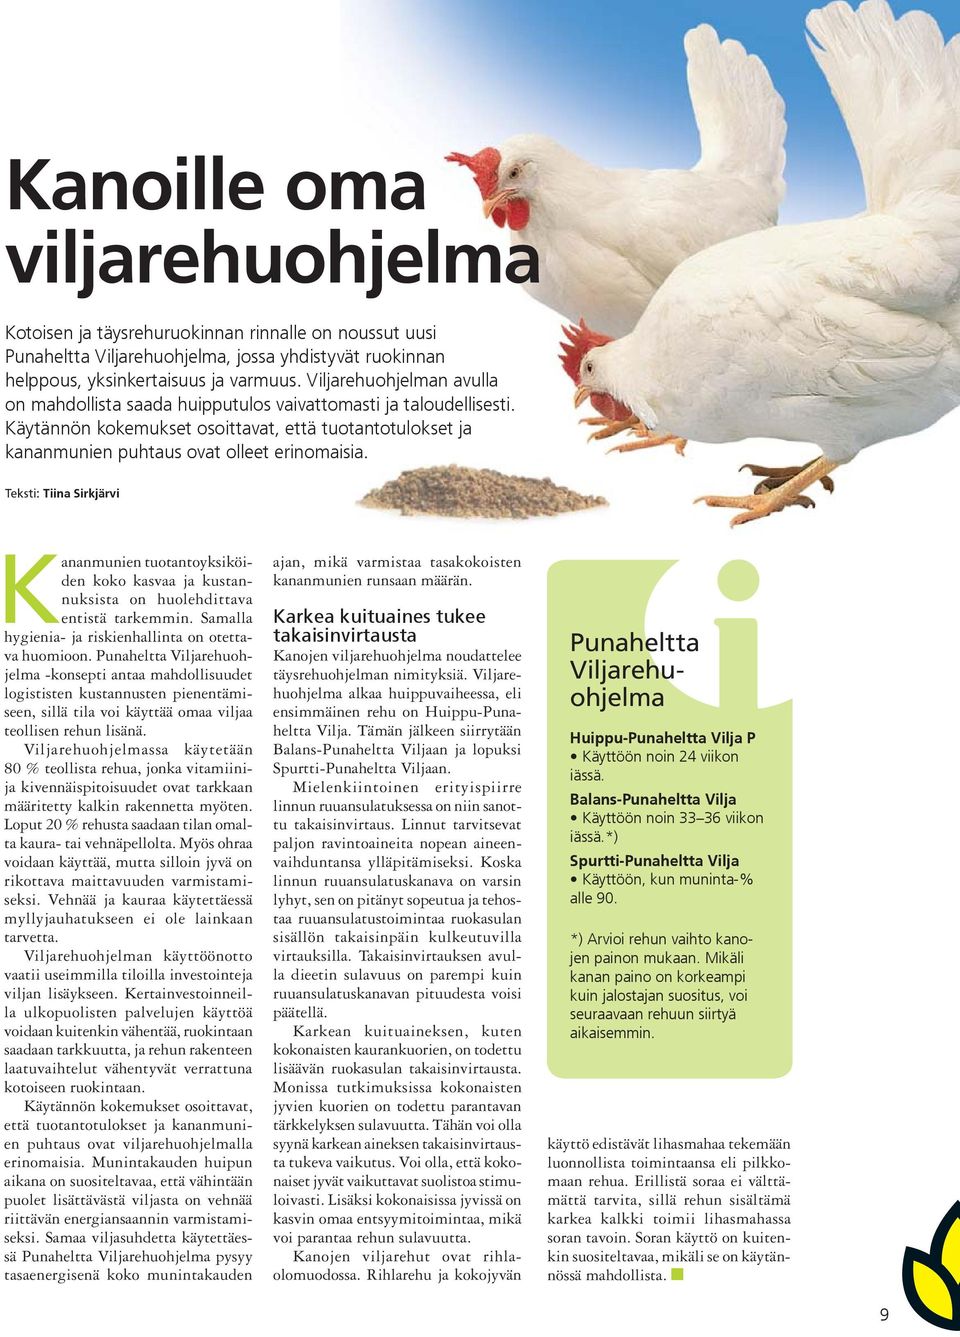 Teksti: Tiina Sirkjärvi Kananmunien tuotantoyksiköiden koko kasvaa ja kustannuksista on huolehdittava entistä tarkemmin. Samalla hygienia- ja riskienhallinta on otettava huomioon.